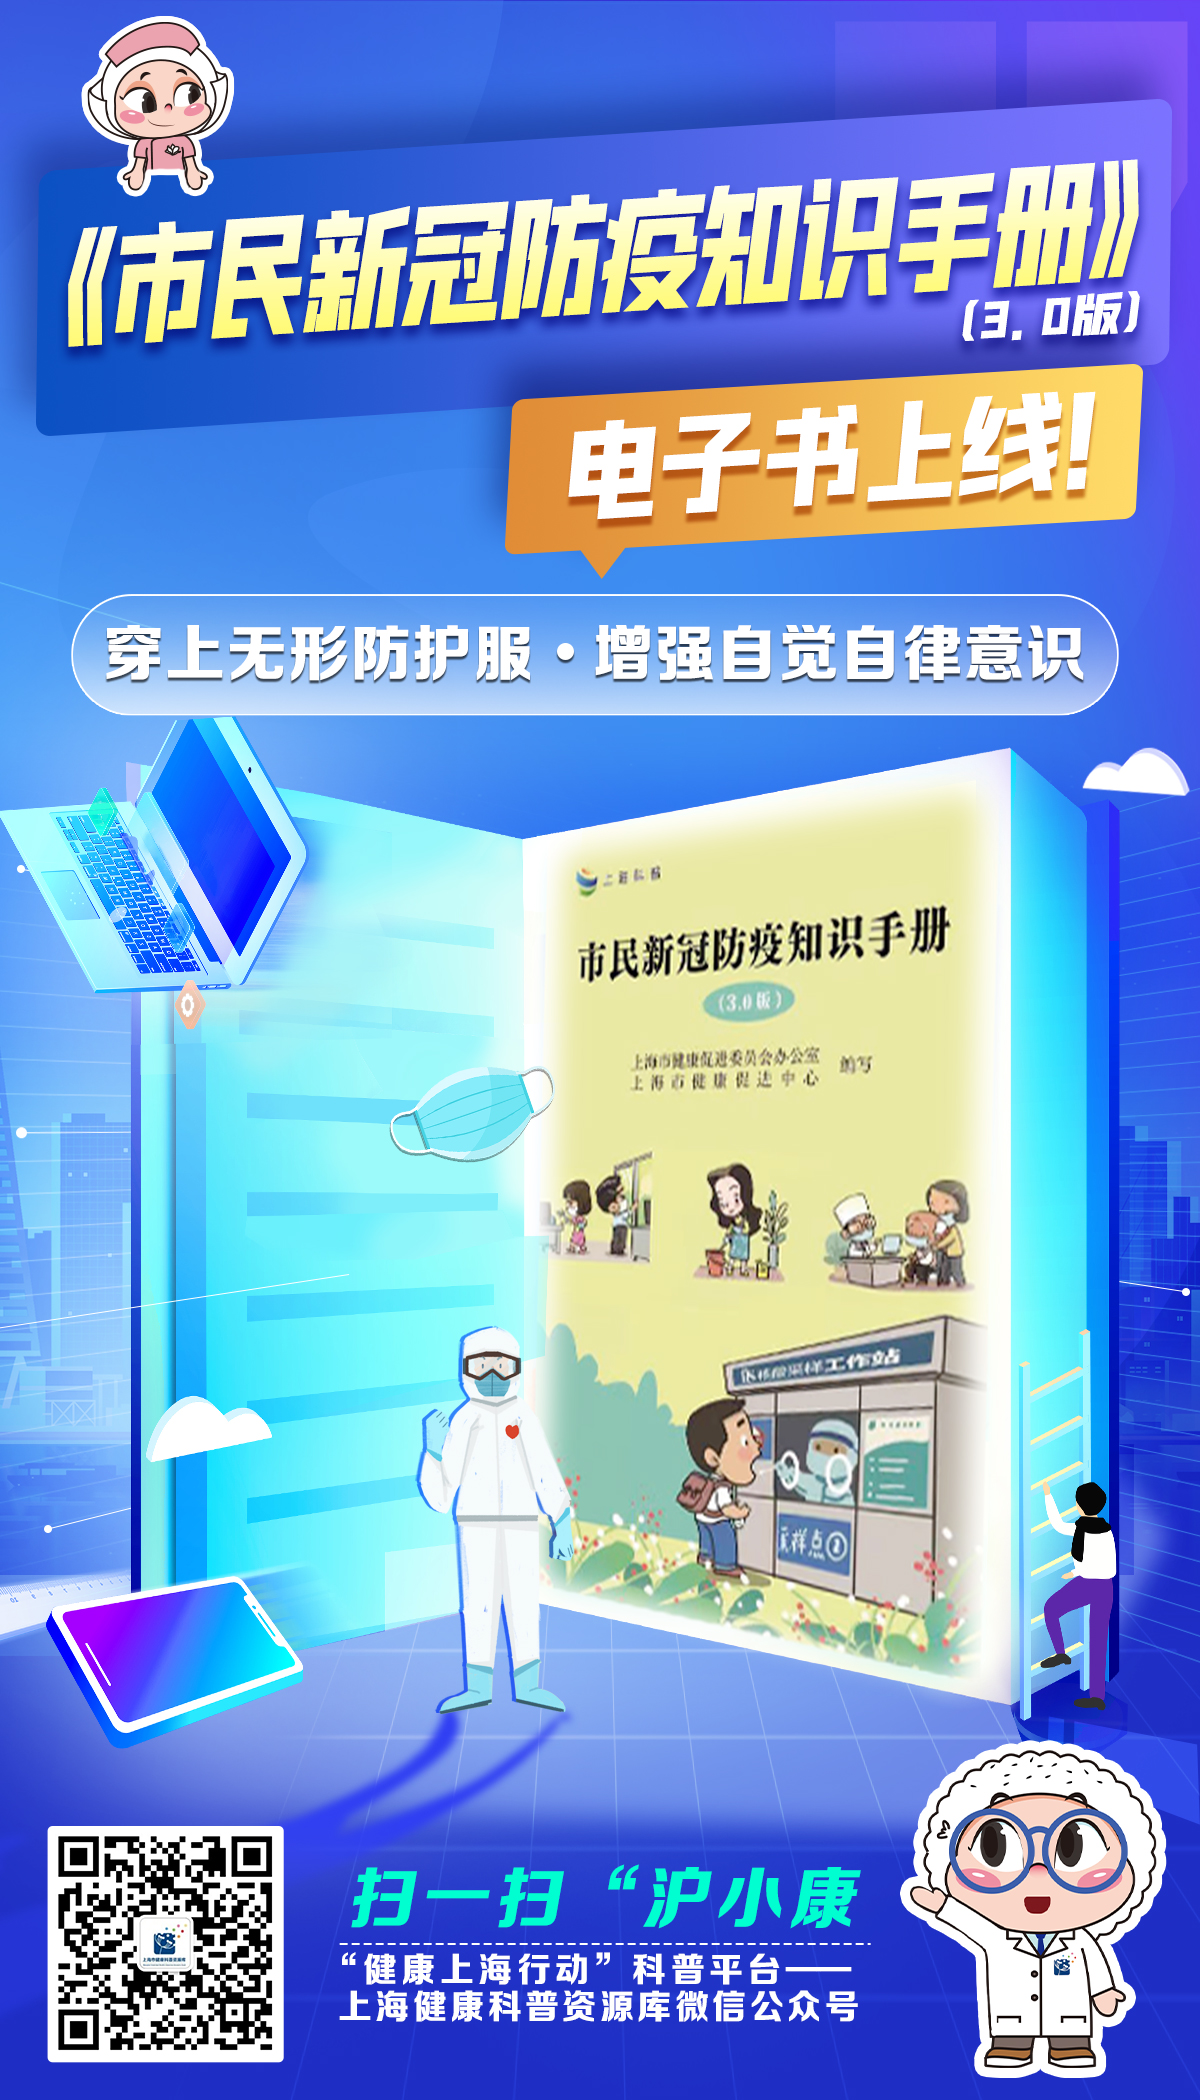 上海《市民新冠防疫知识手册》“3.0版”上线